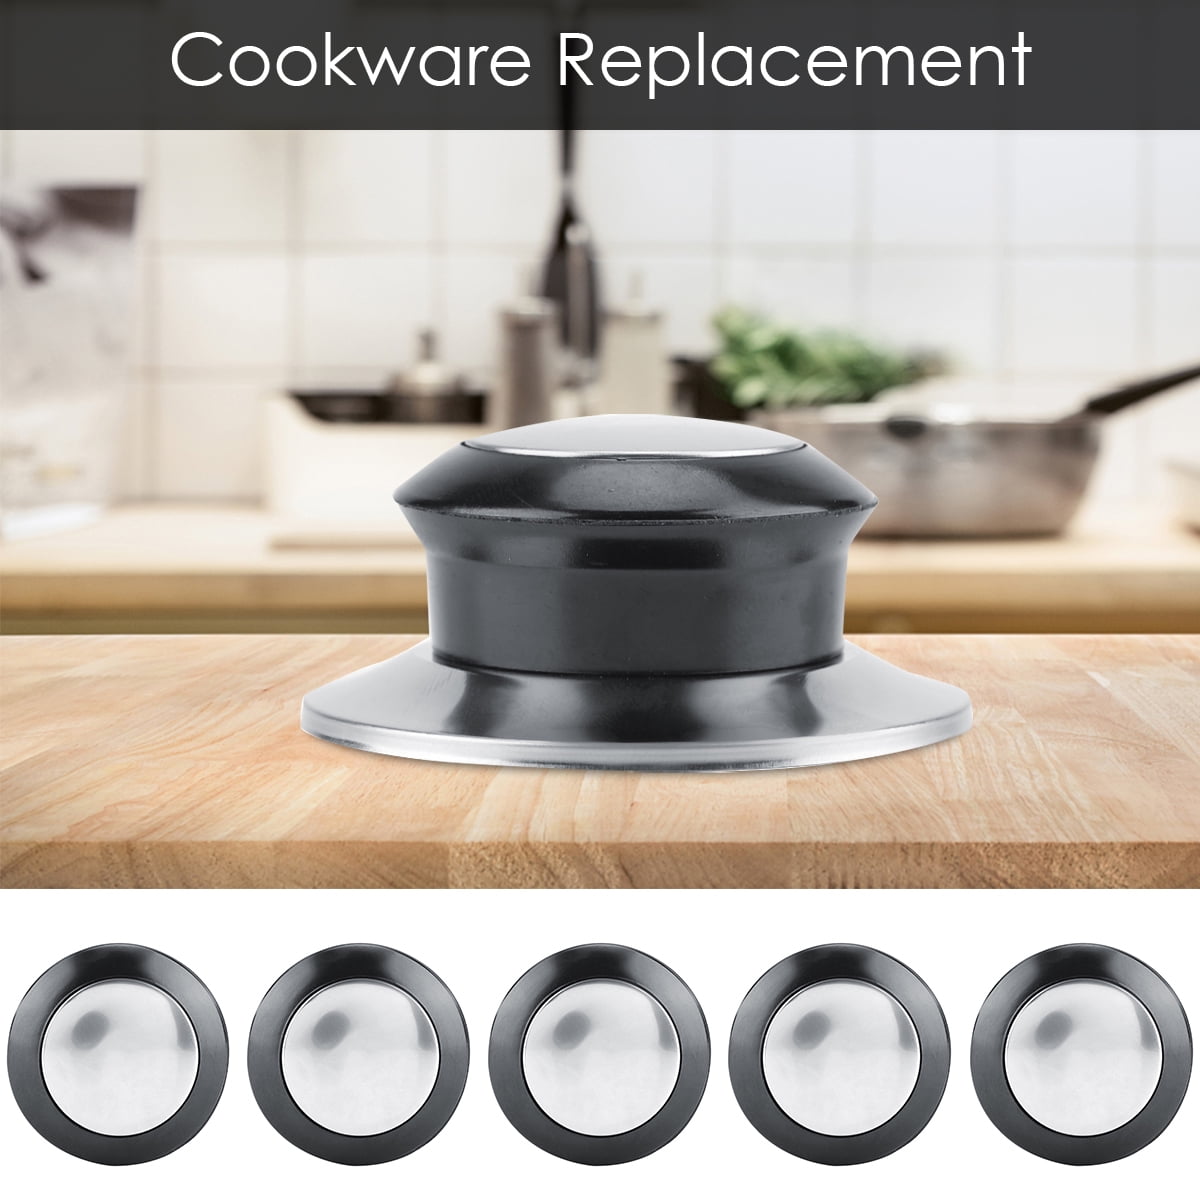 5Pcs Heat-Resistant Pot Pan Lids Knob Lifting Handle Home Kitchen Cookware Replacement Parts 